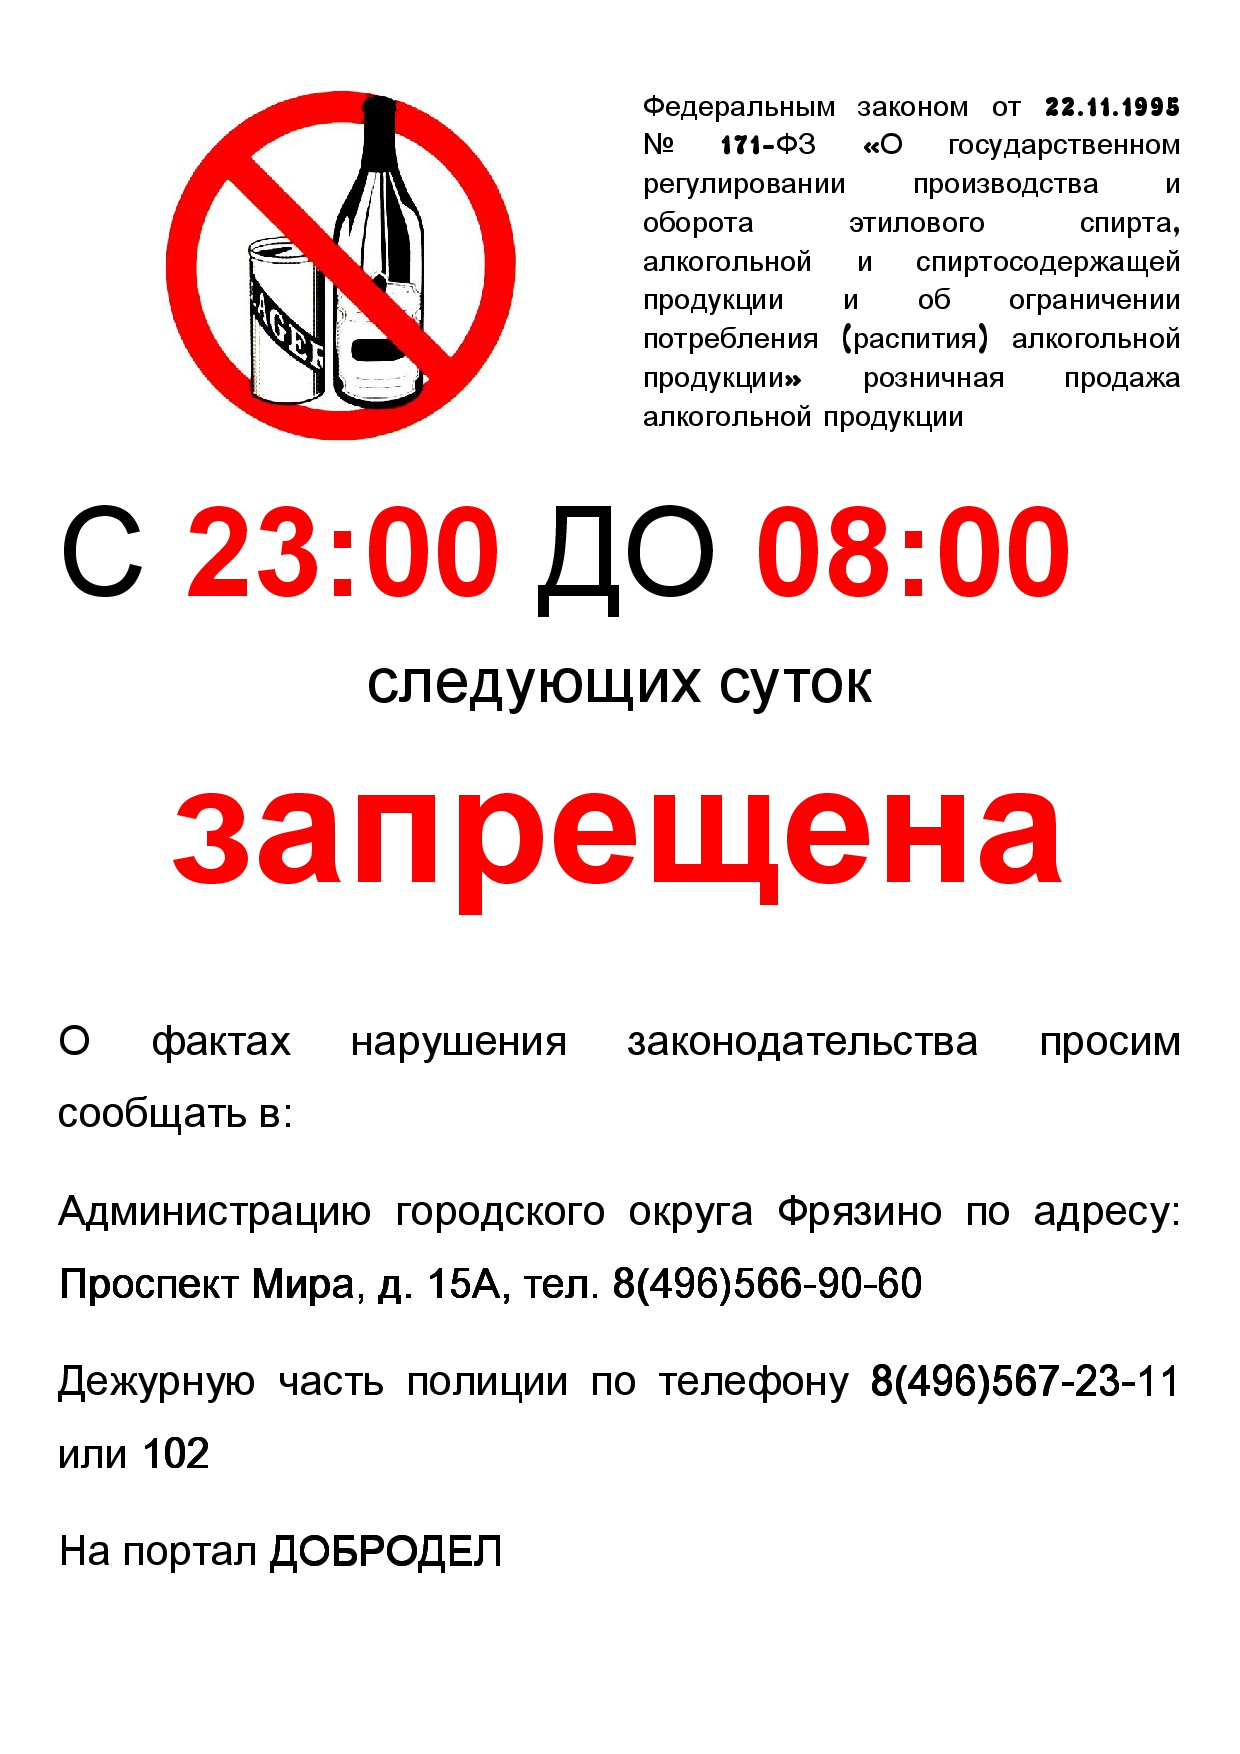 После 23 апреля. Запрещено продавать алкоголь. Алкоголь не продается.